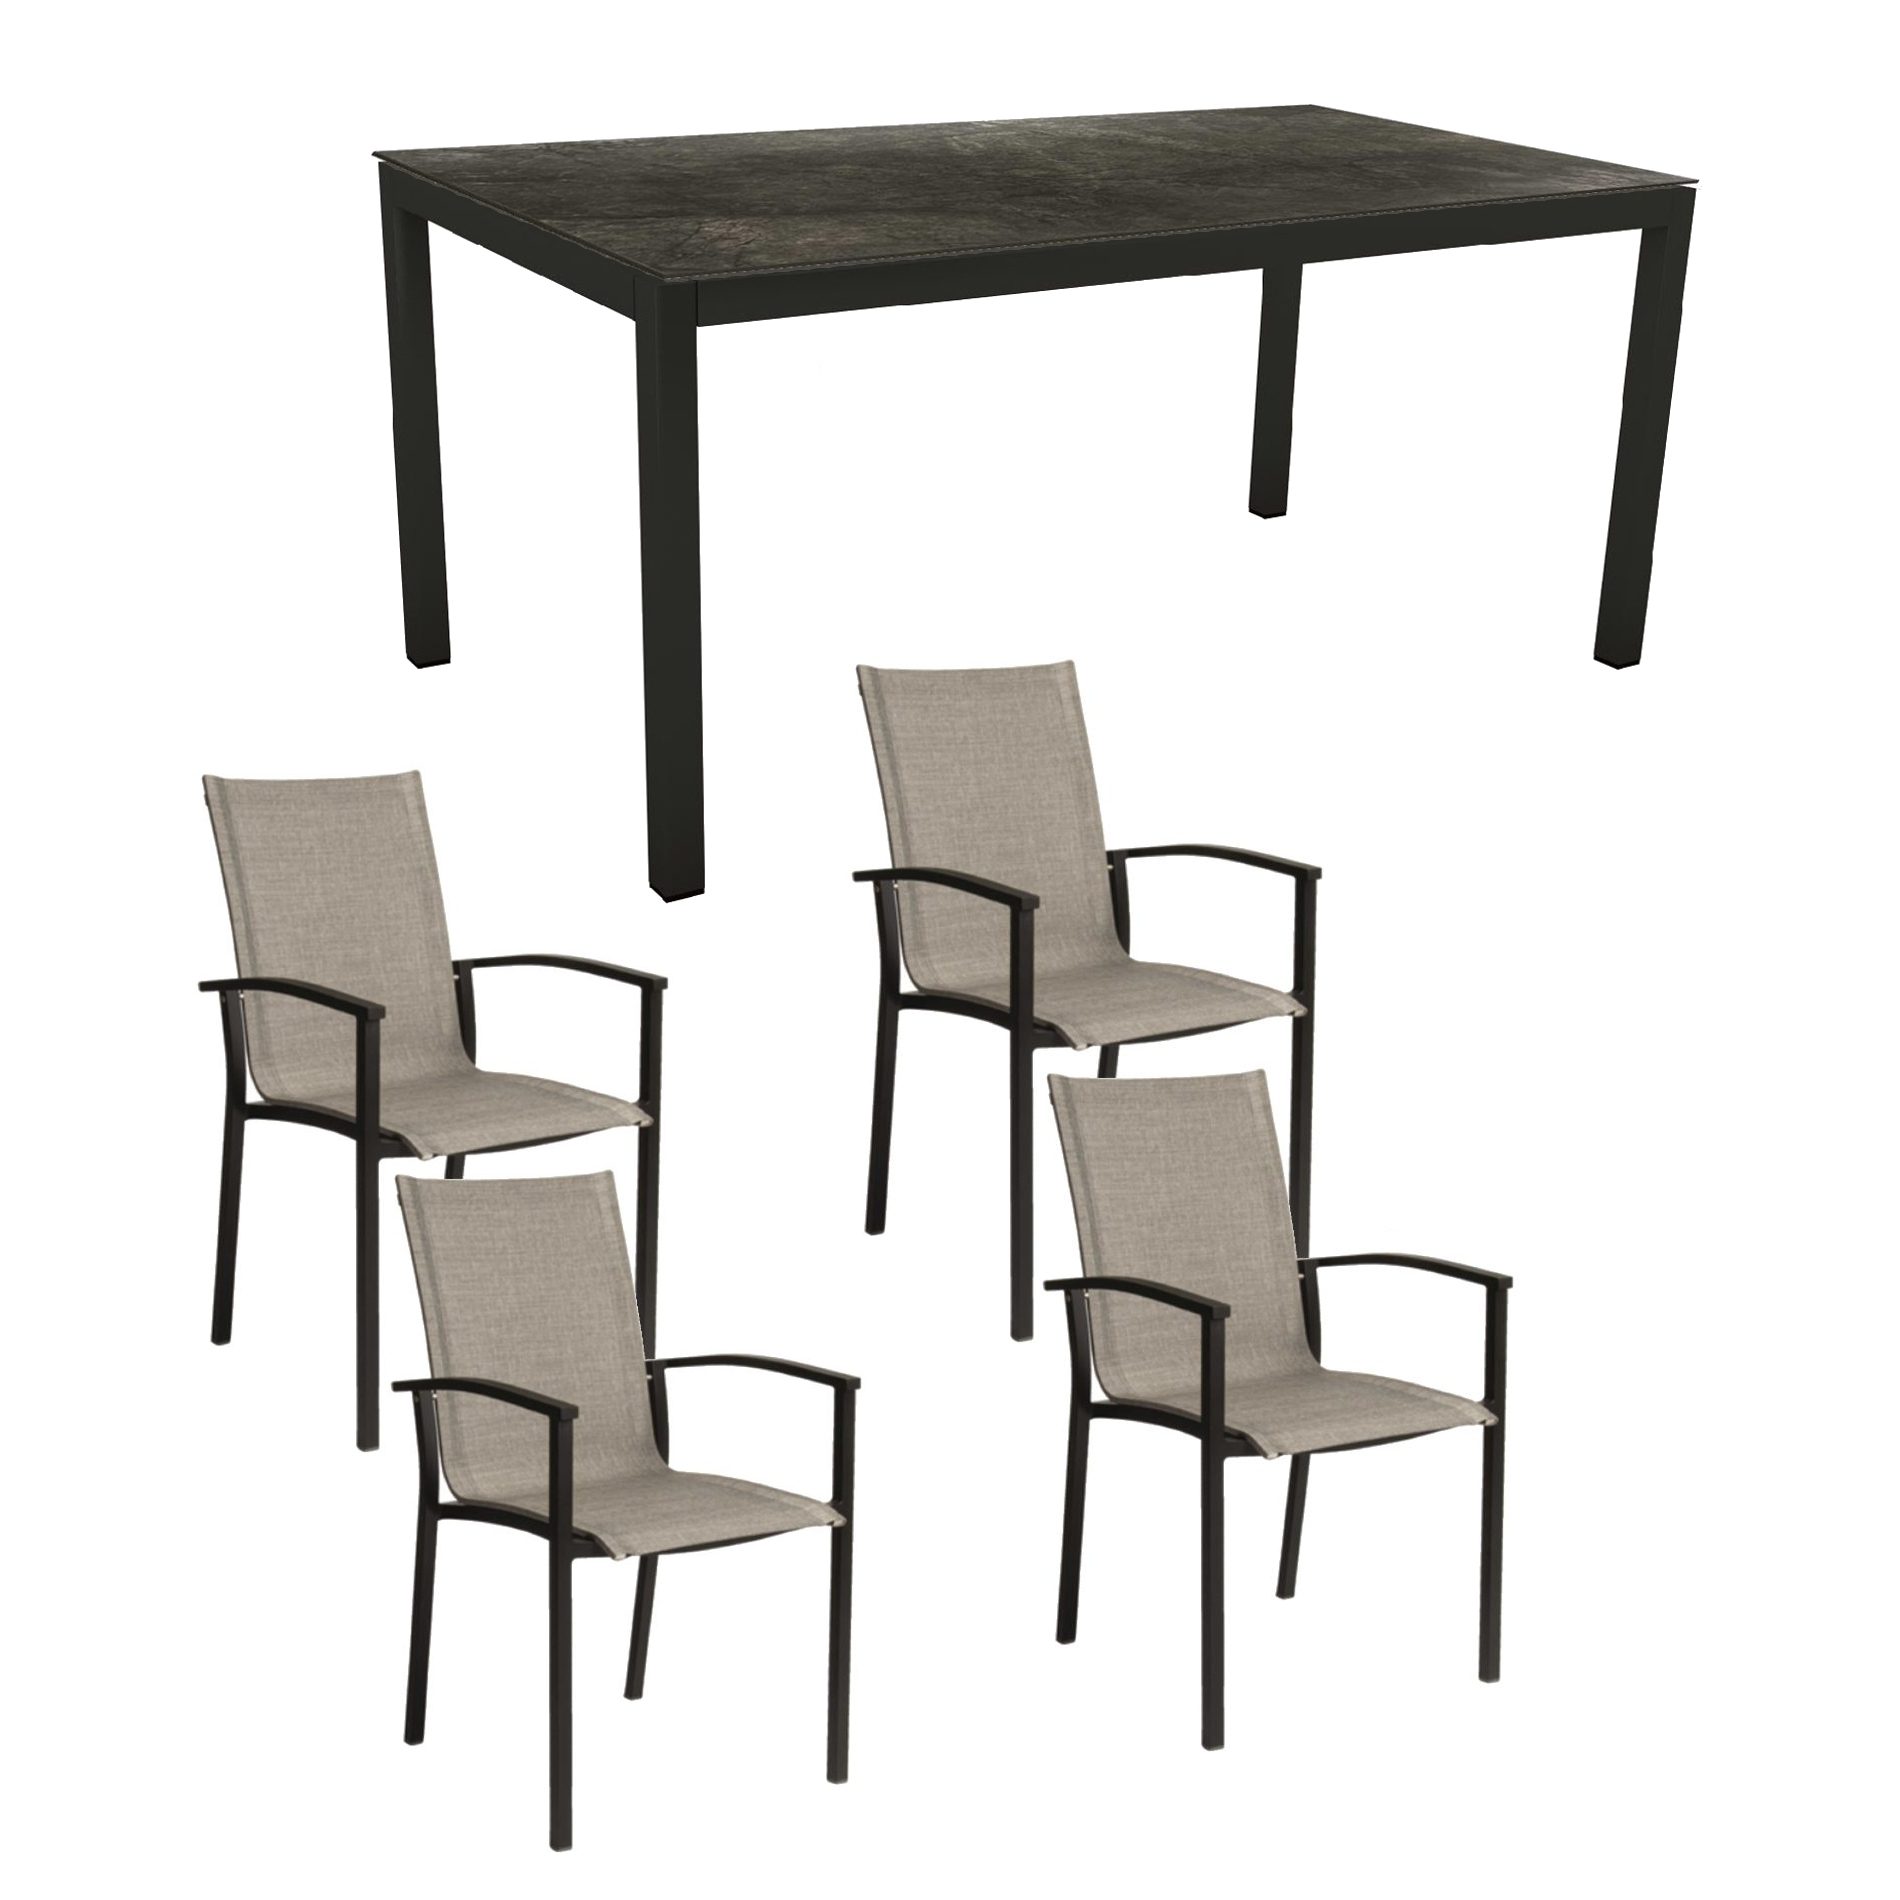 Stern Gartenmöbel-Set mit Stapelsessel "Evoee" & Gartentisch, Gestelle Aluminium schwarz matt, Sitzfläche Textilgewebe Leinen grau, Tischplatte HPL Dark Marble